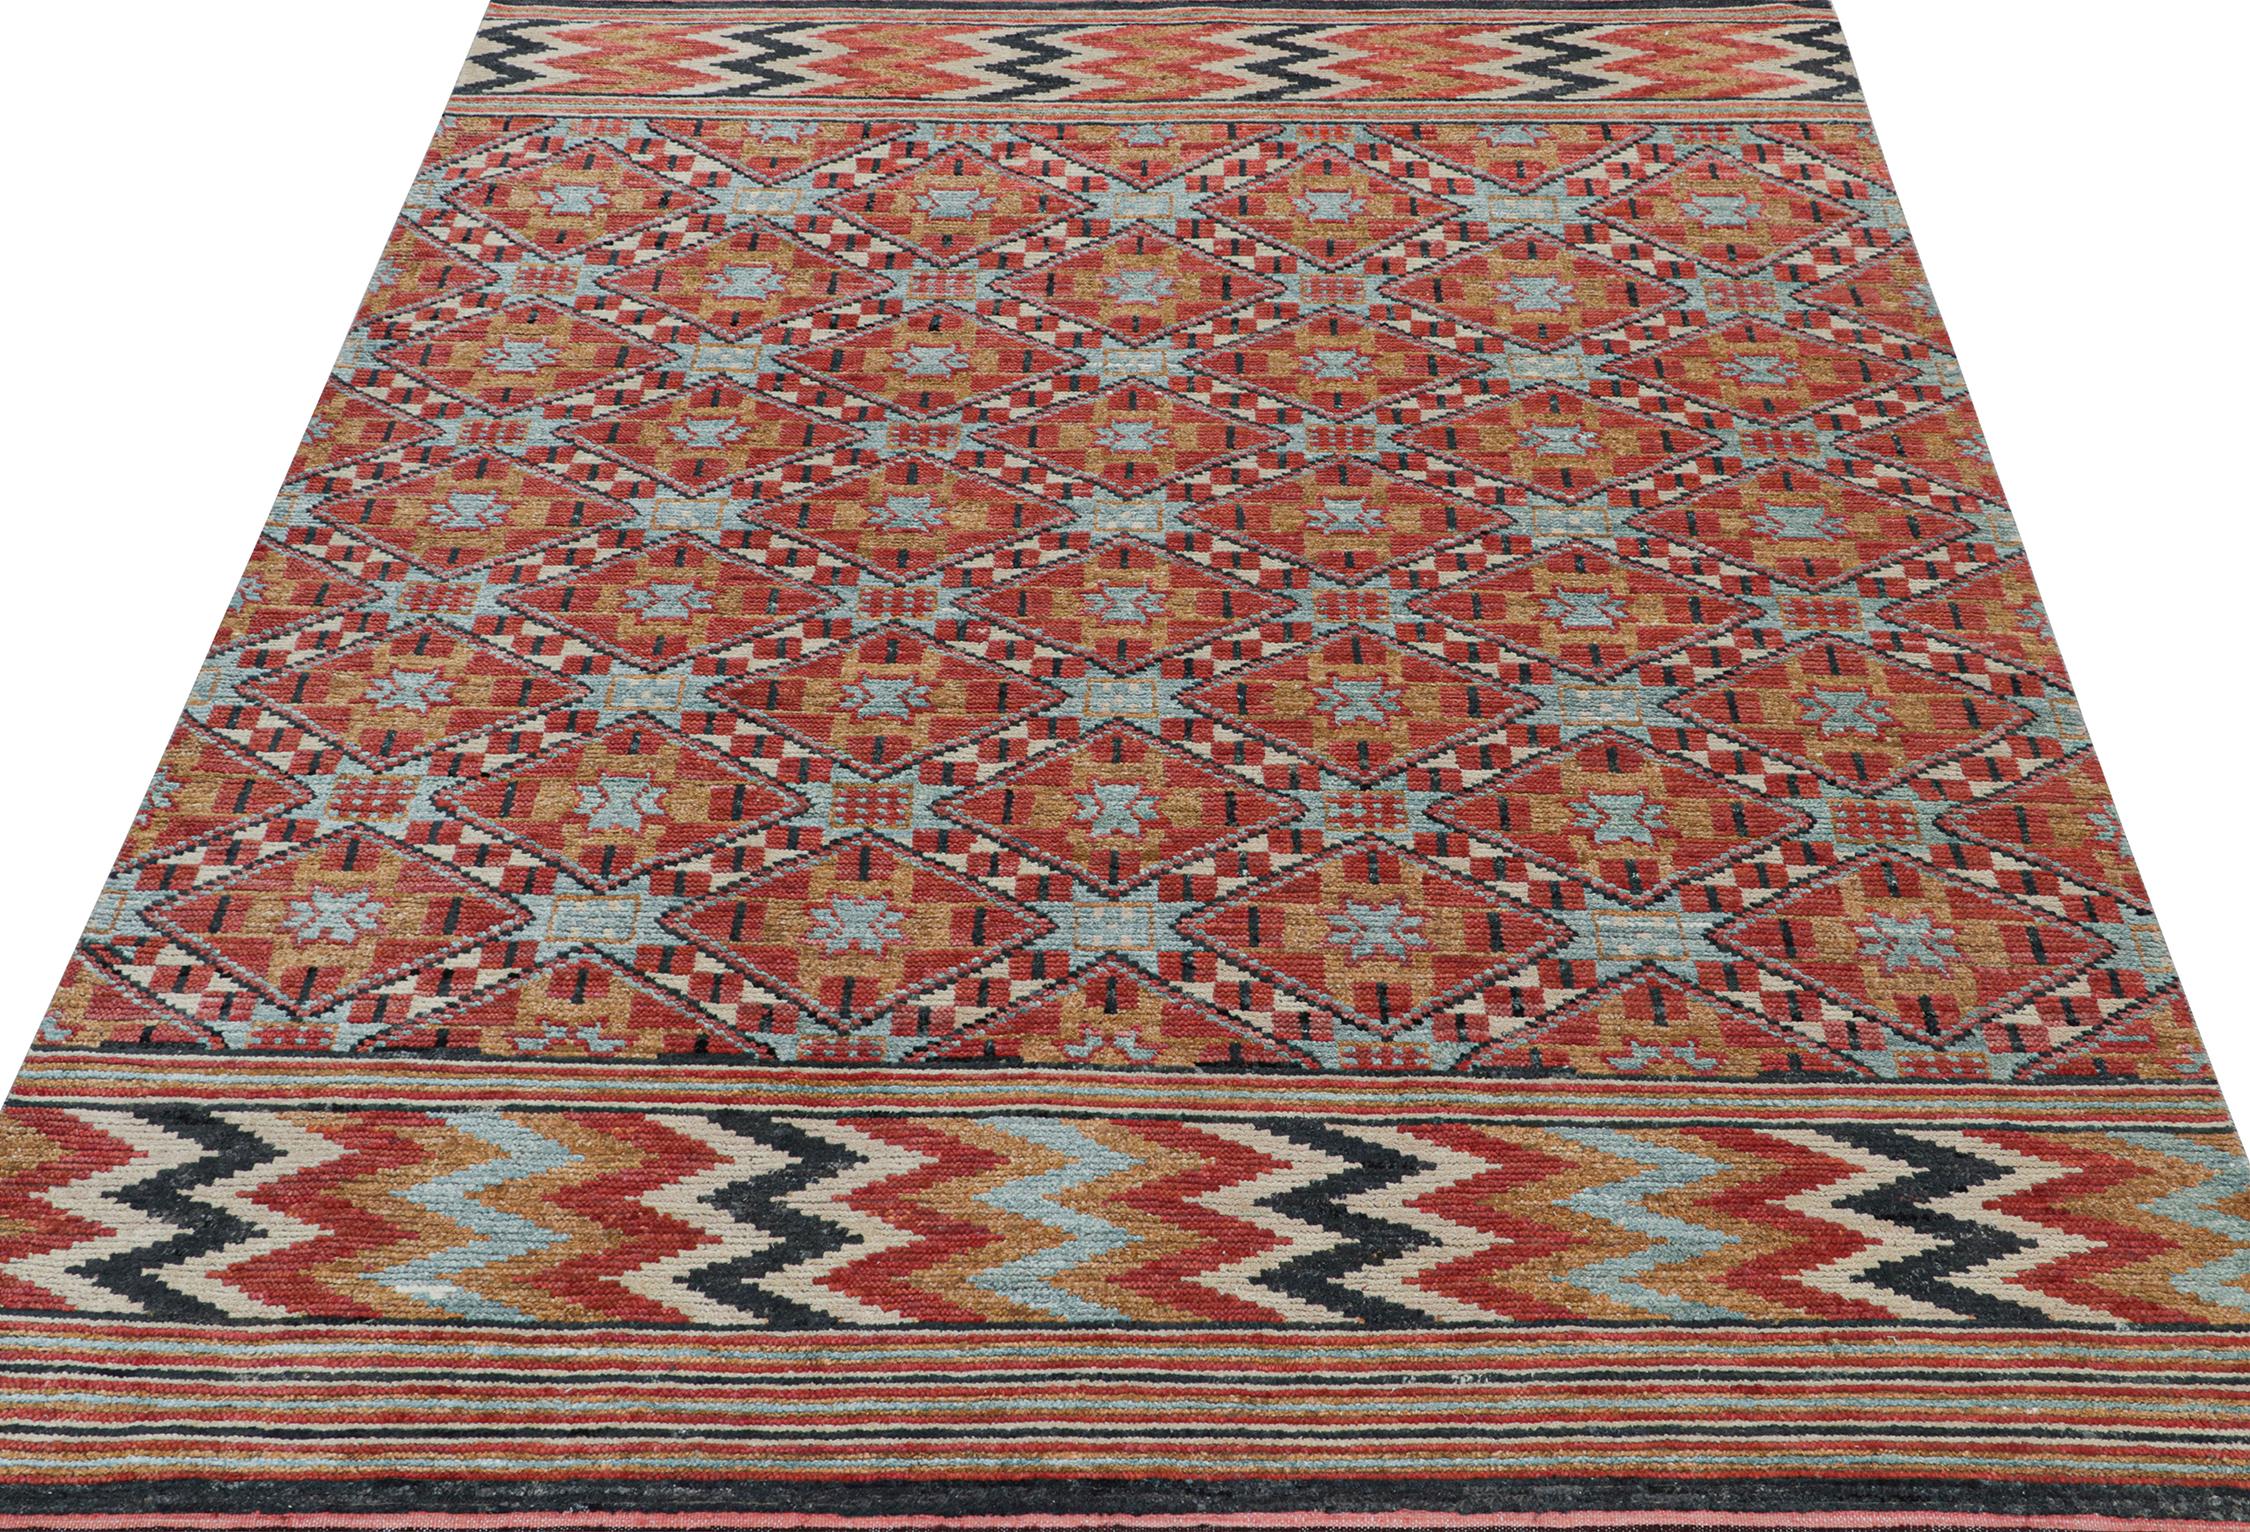 Ce tapis contemporain 8x10 est une grande entrée dans la nouvelle collection marocaine de Rug & Kilim - une prise audacieuse sur le style iconique. Noué à la main en laine, soie et coton.
Plus loin dans la conception :
La pièce s'inspire de motifs